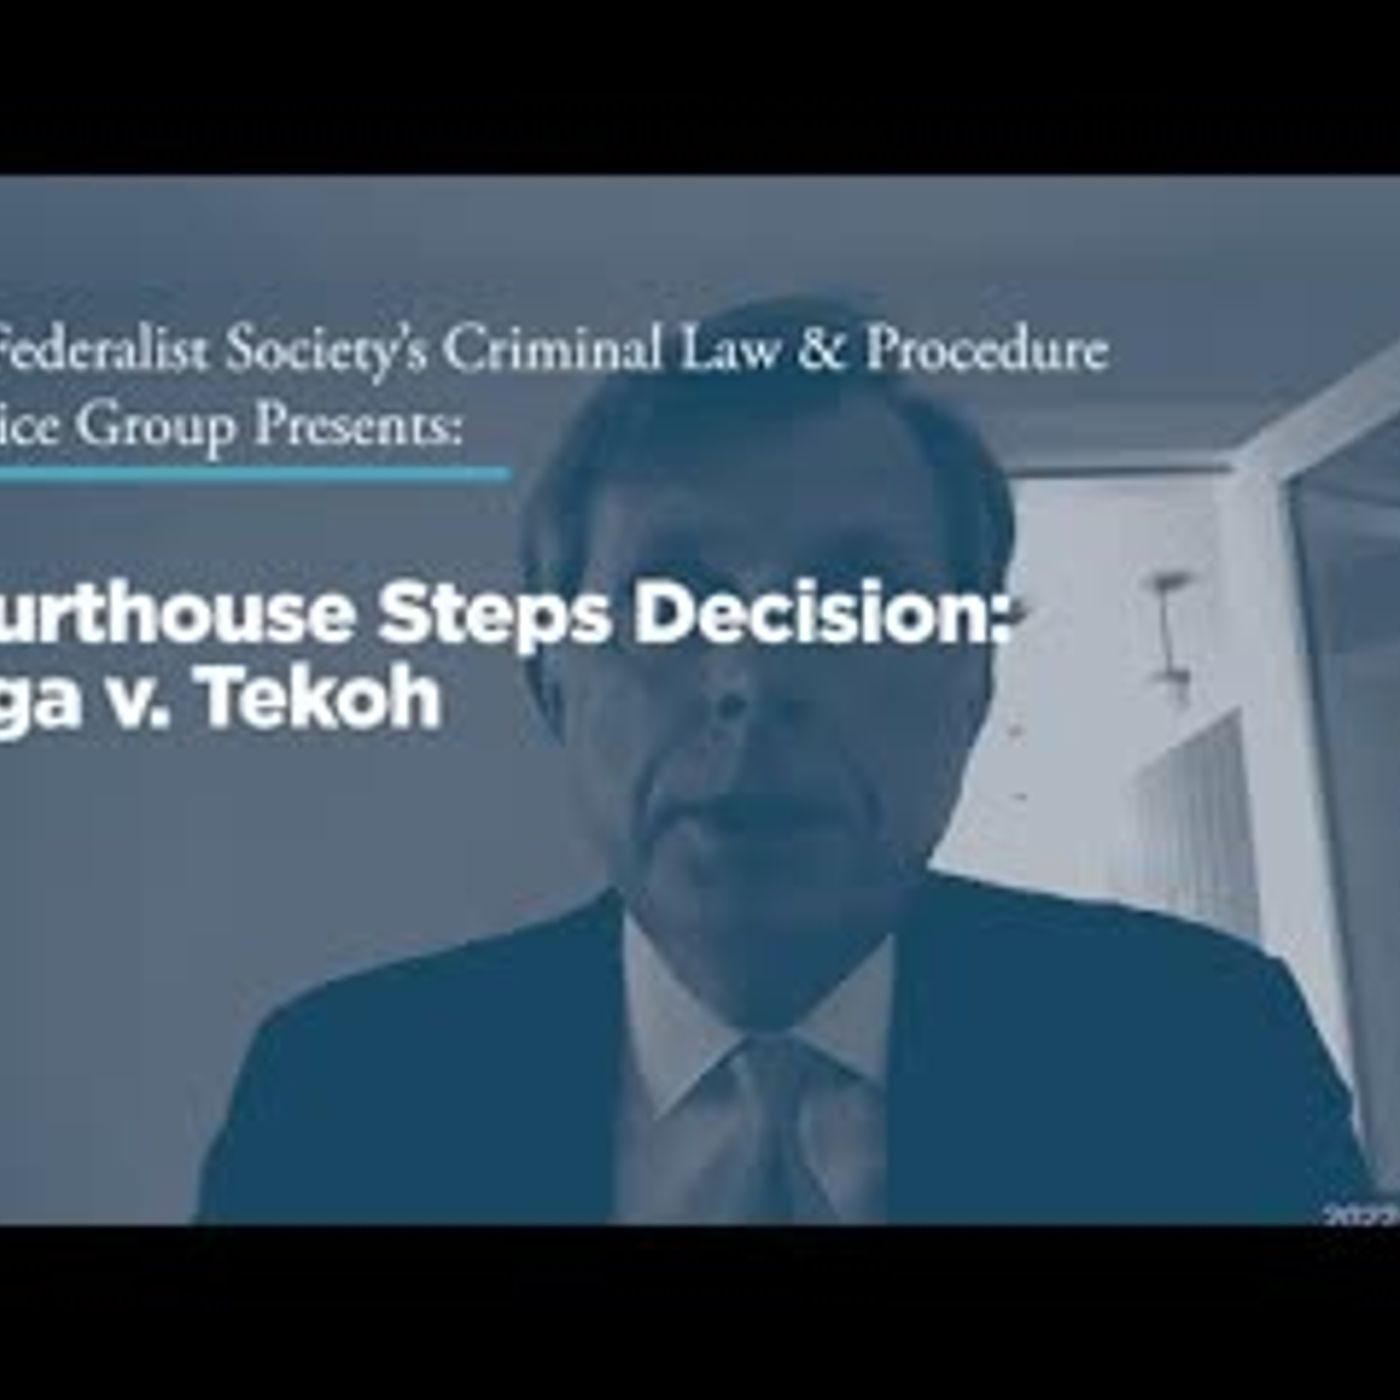 Courthouse Steps Decision: Vega v. Tekoh